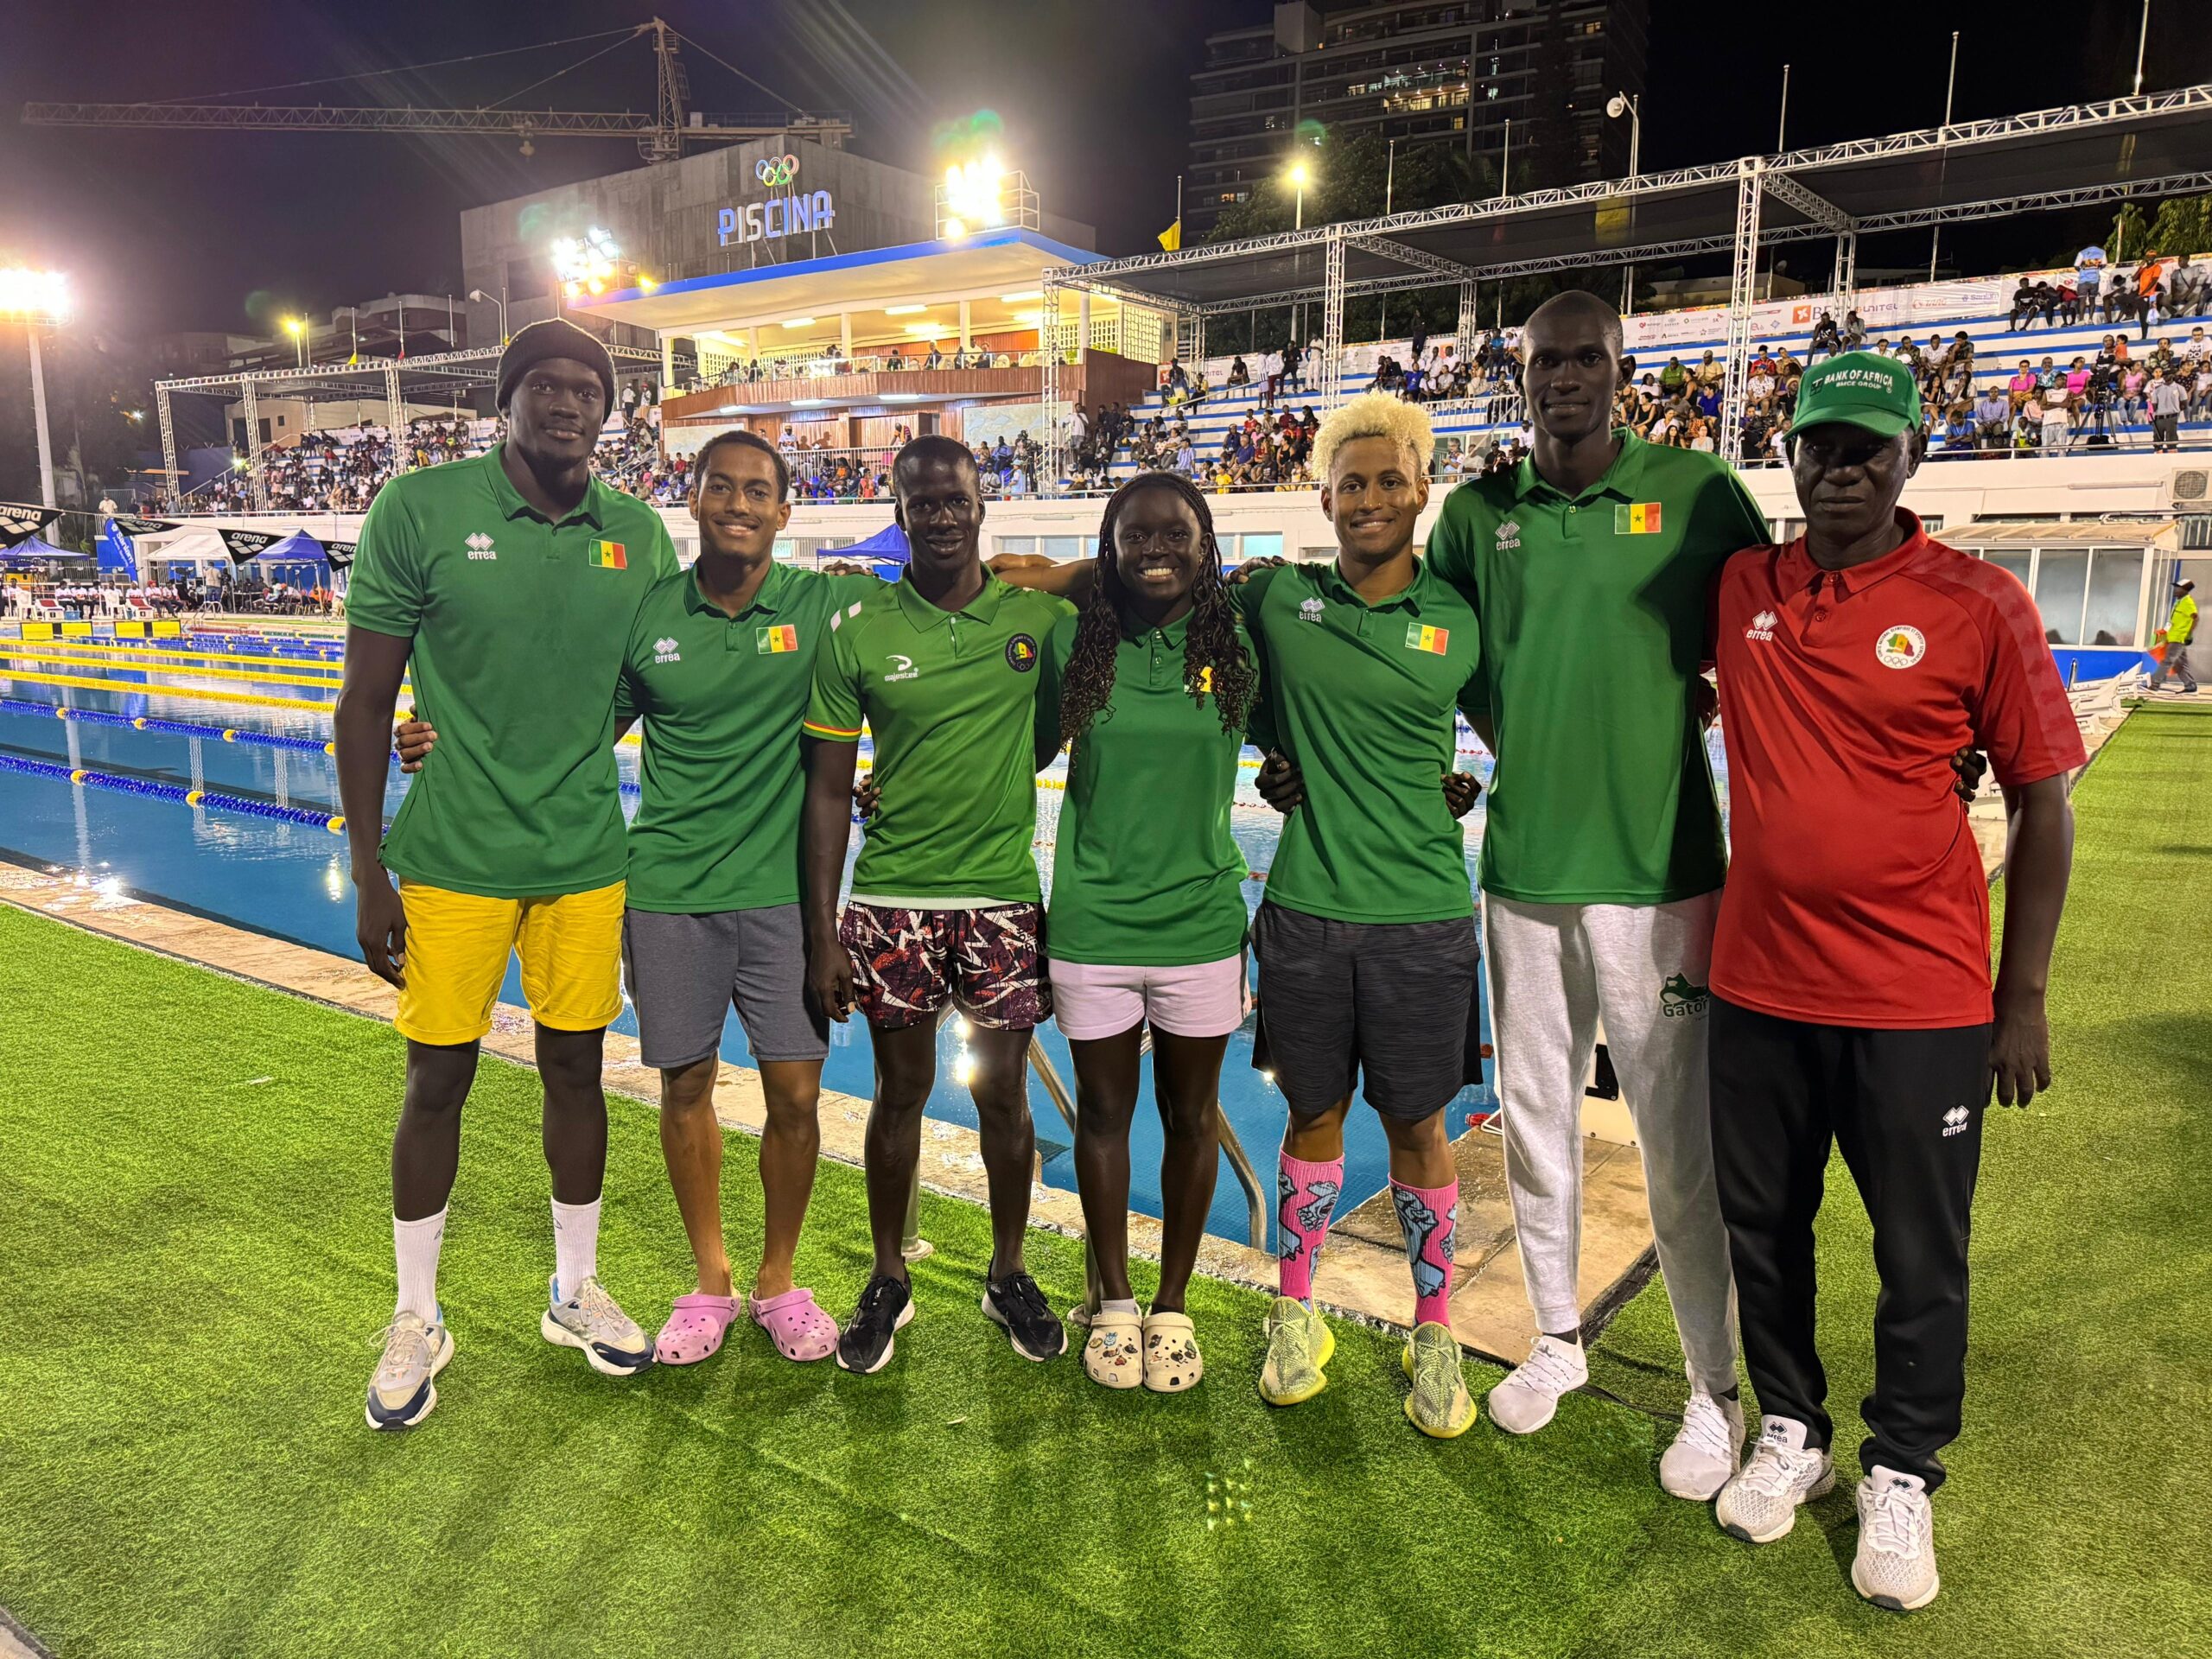 Championnats d’Afrique seniors à Luanda : une participation honorable du Sénégal